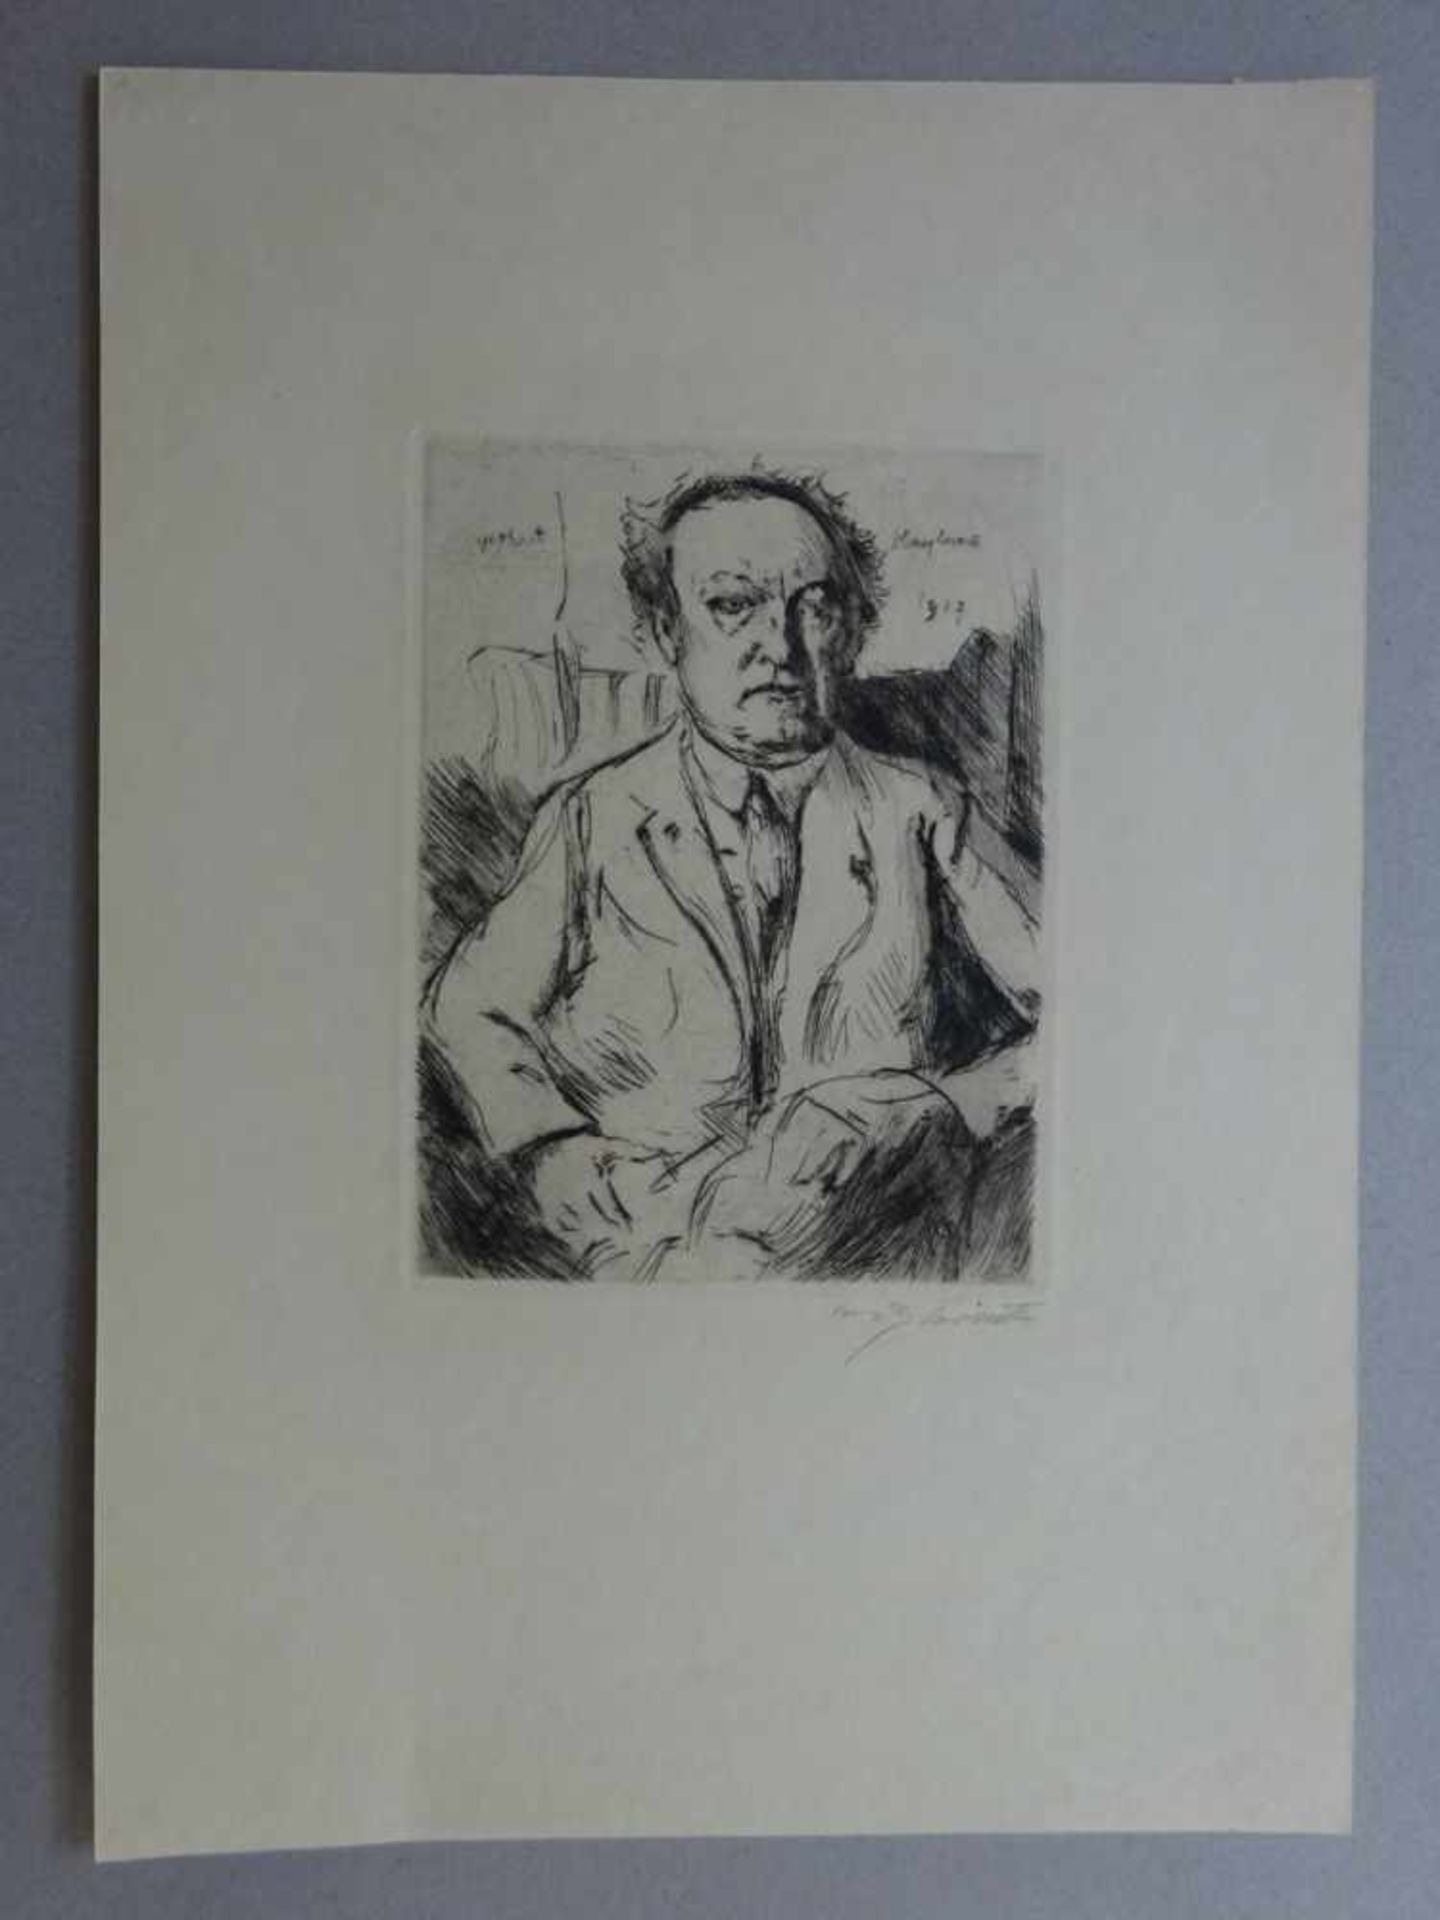 Corinth, Lovis(Taplau 1858 - 1925 Zandvoort). Gerhart Hauptmann. Radierung von 1917. Signiert. In - Bild 2 aus 4